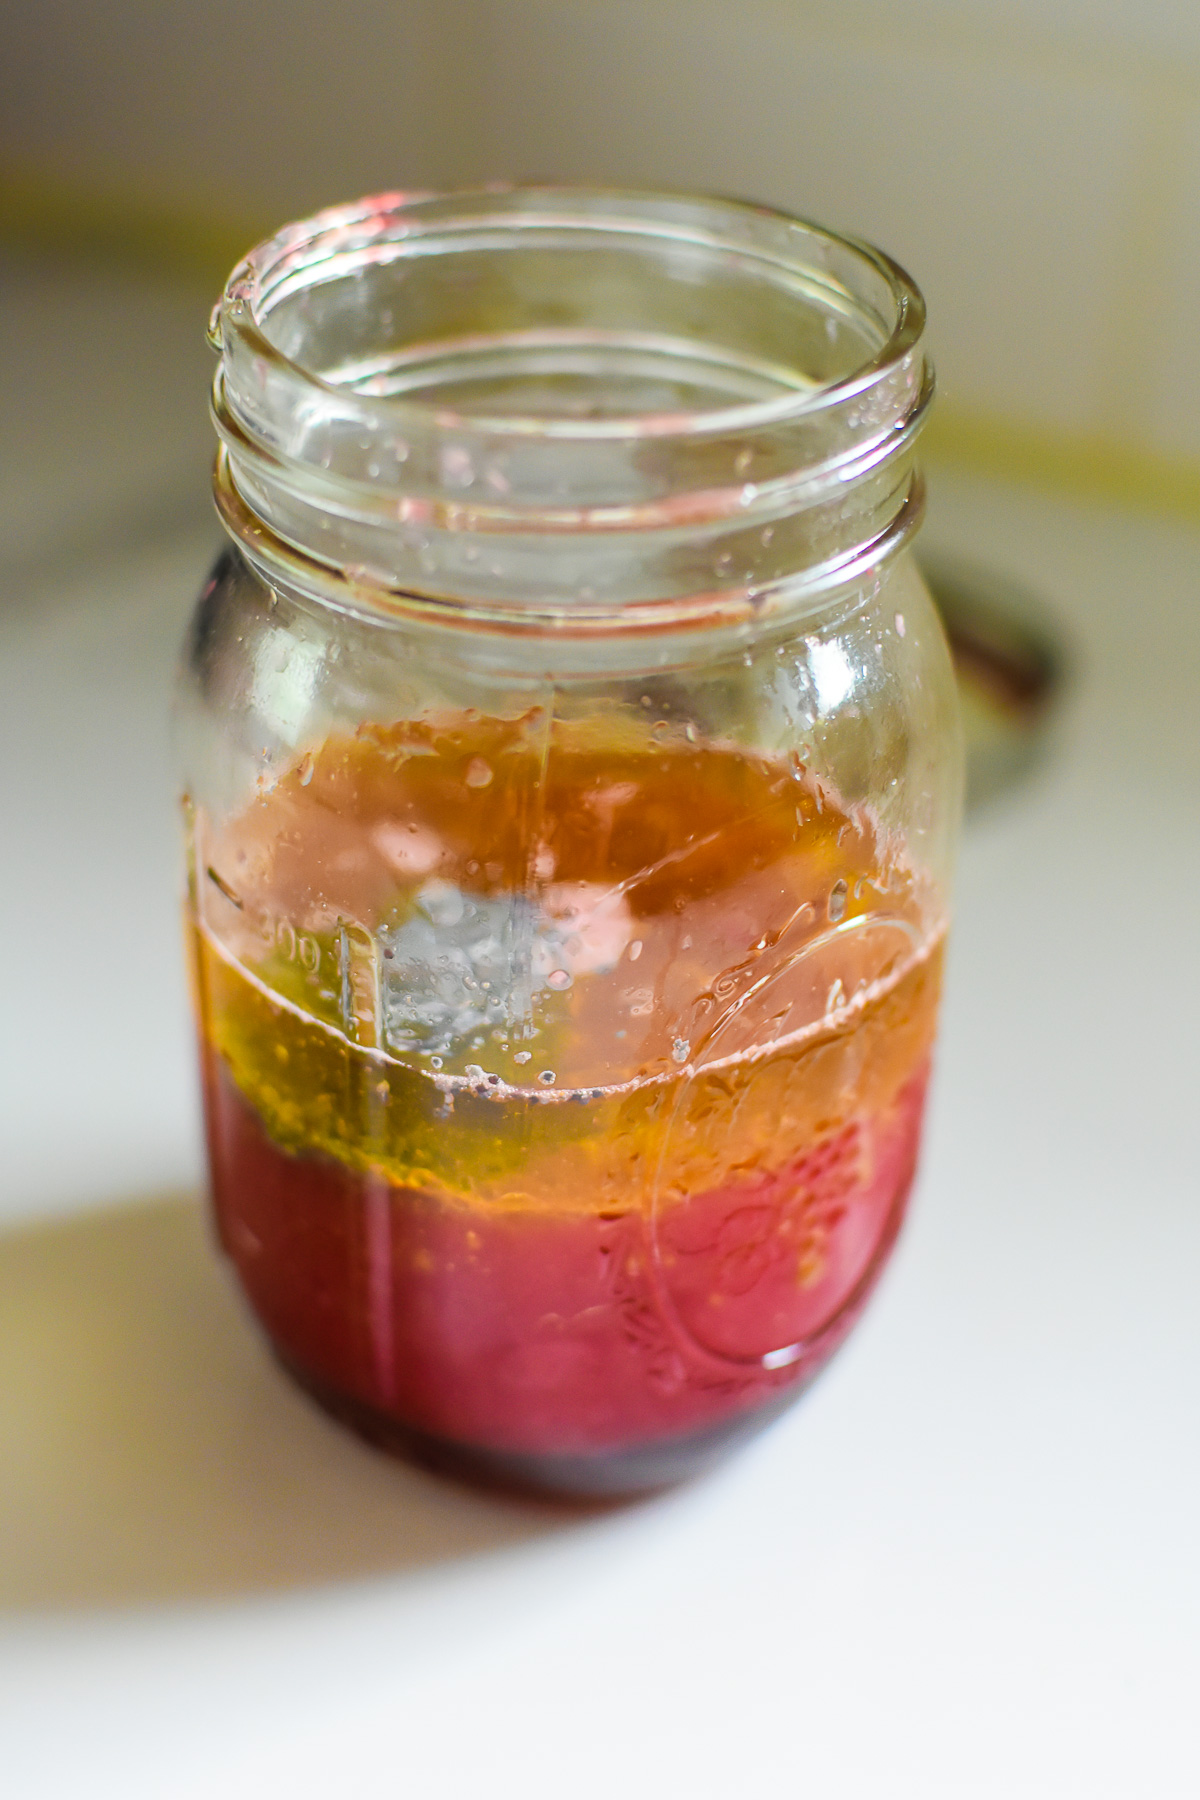 ingredients to make fresh blood orange juice vinaigrette in mason jar.